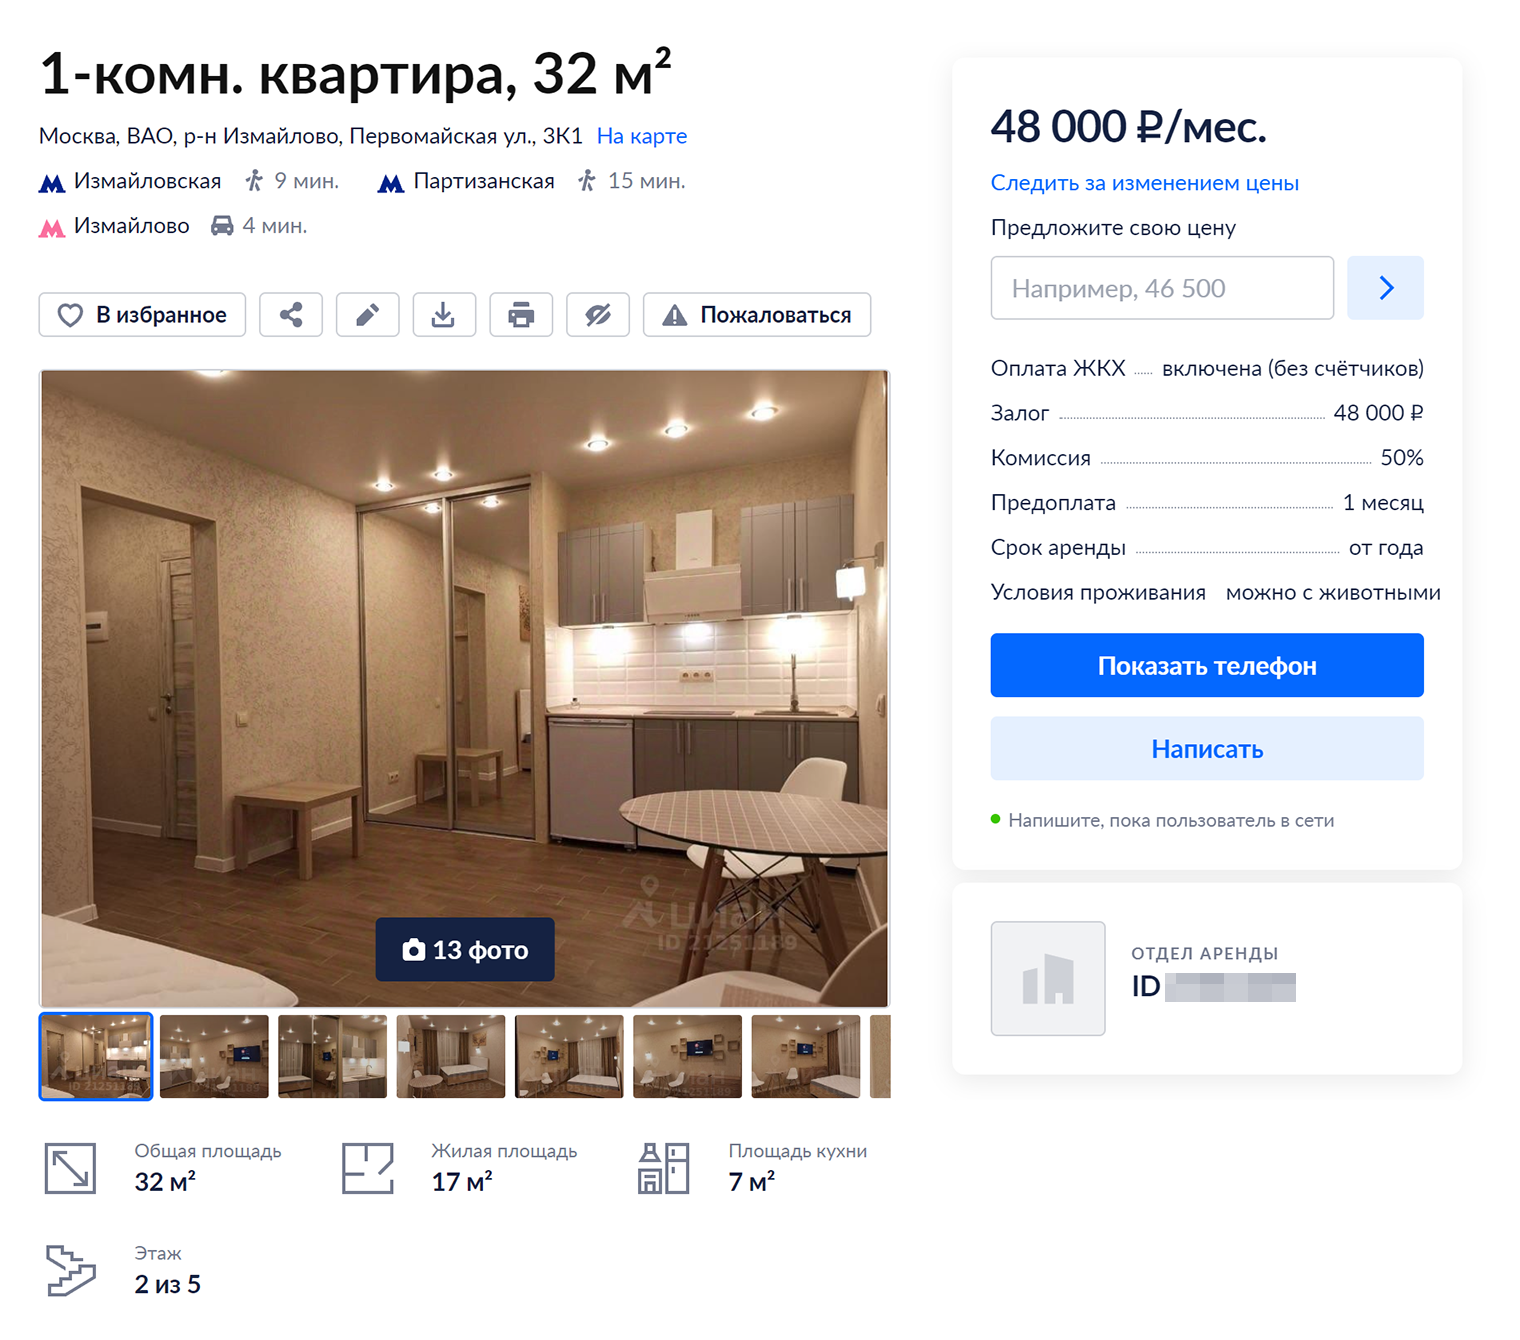 В этой квартире всего 32 квадрата, но она стоит 48 000 ₽ благодаря современному ремонту. Таких мало. Источник: cian.ru